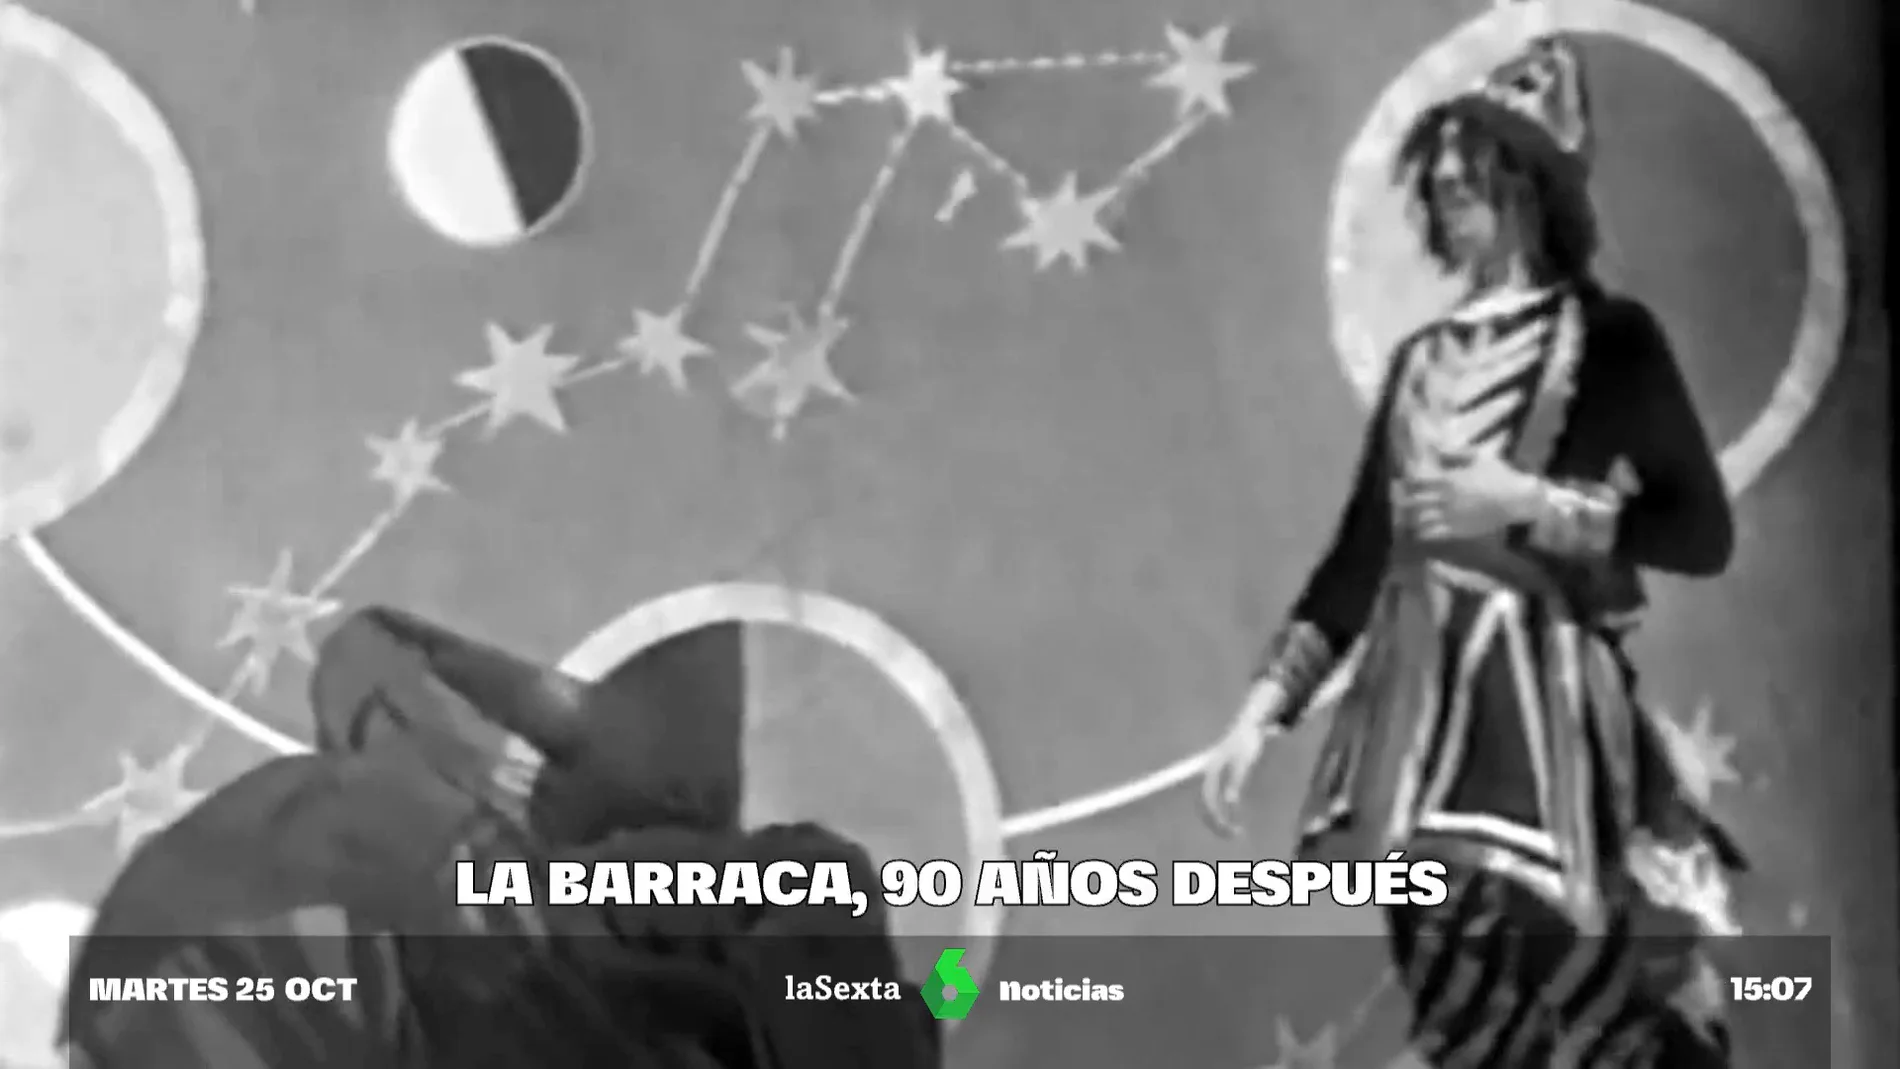 La Barraca de García Lorca vuelve a la vida, 90 años después